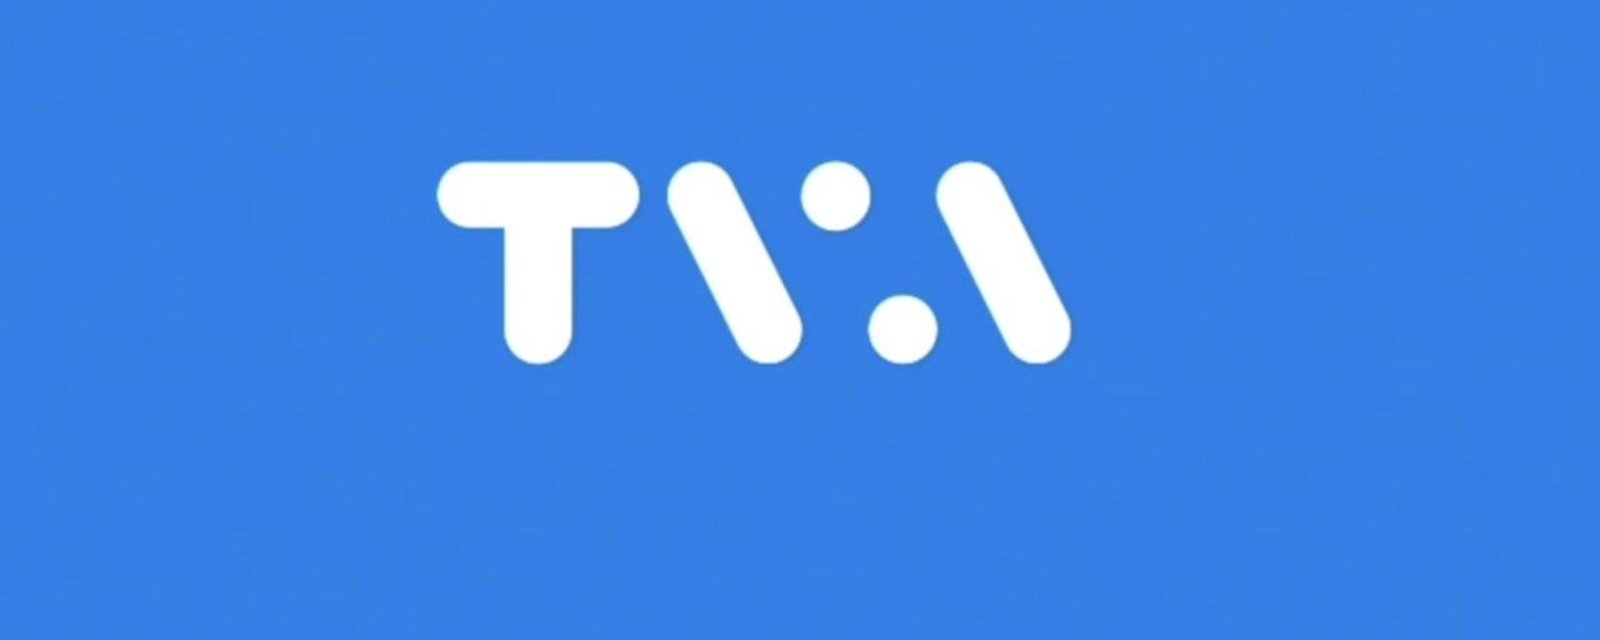 TVA présente son nouveau logo et son nouveau slogan, mais les internautes ne sont pas convaincus